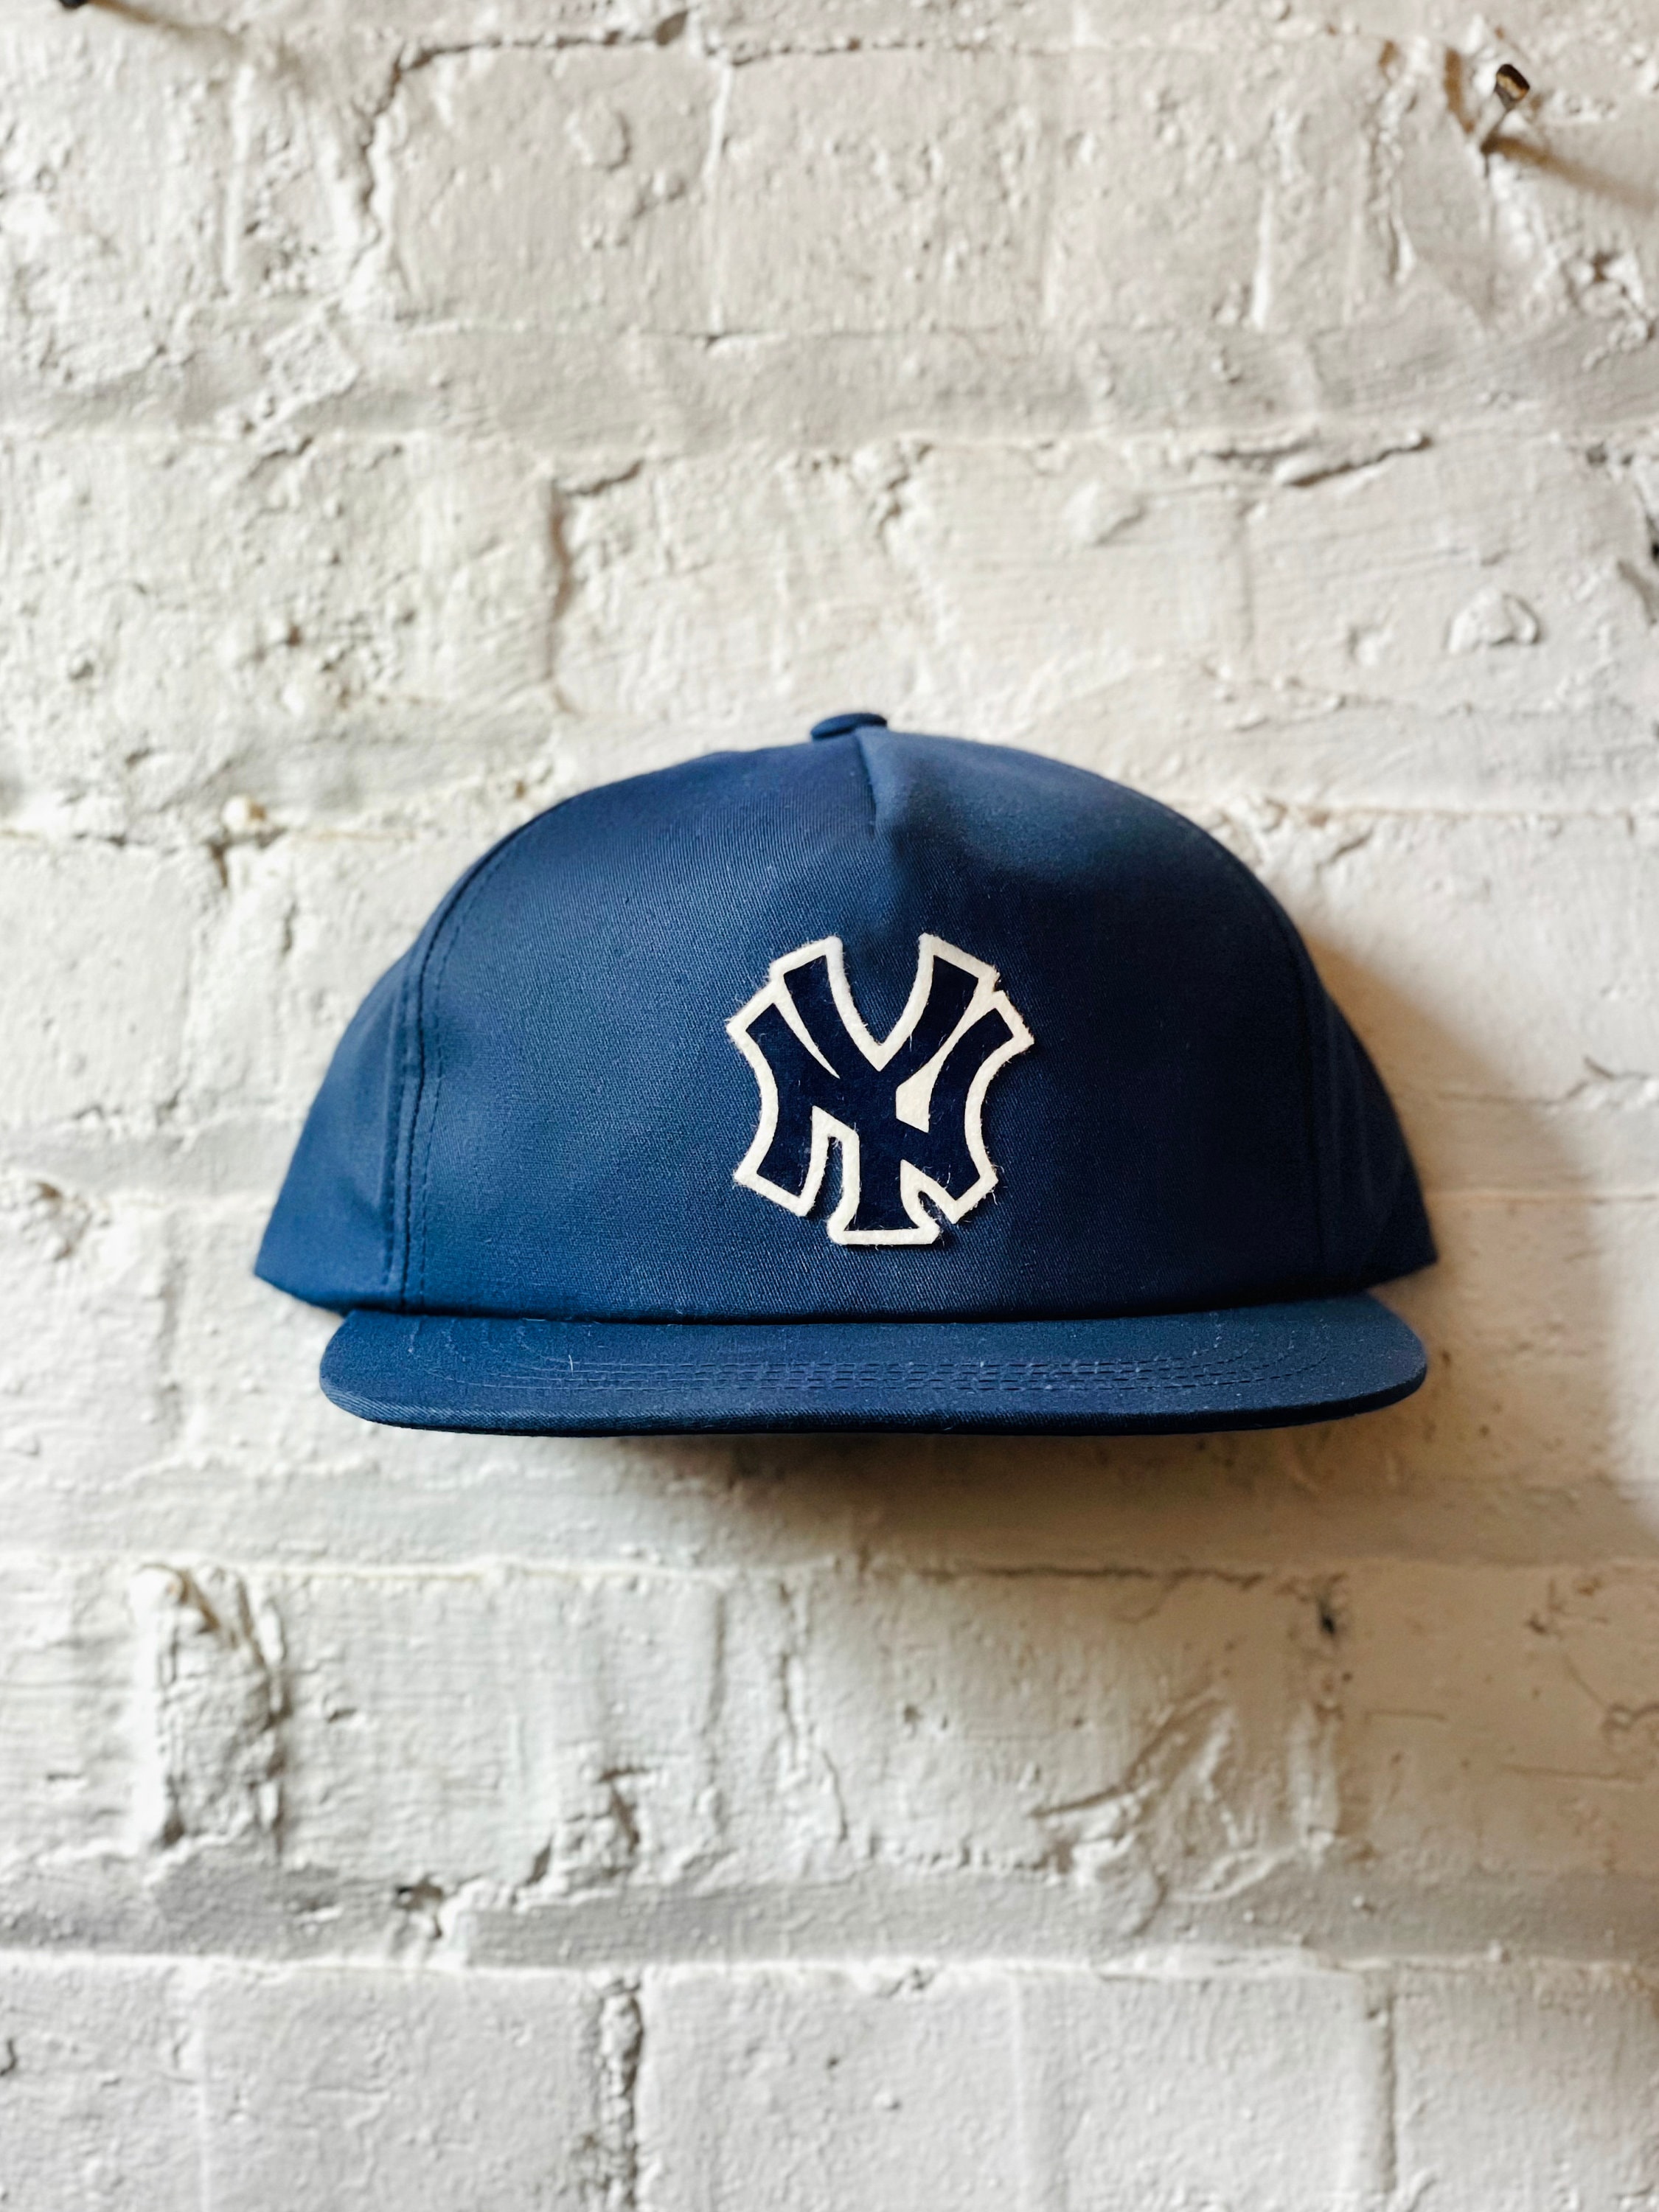 Mlb New York Yankees Baseball Logo Glass Framed Panel : Target